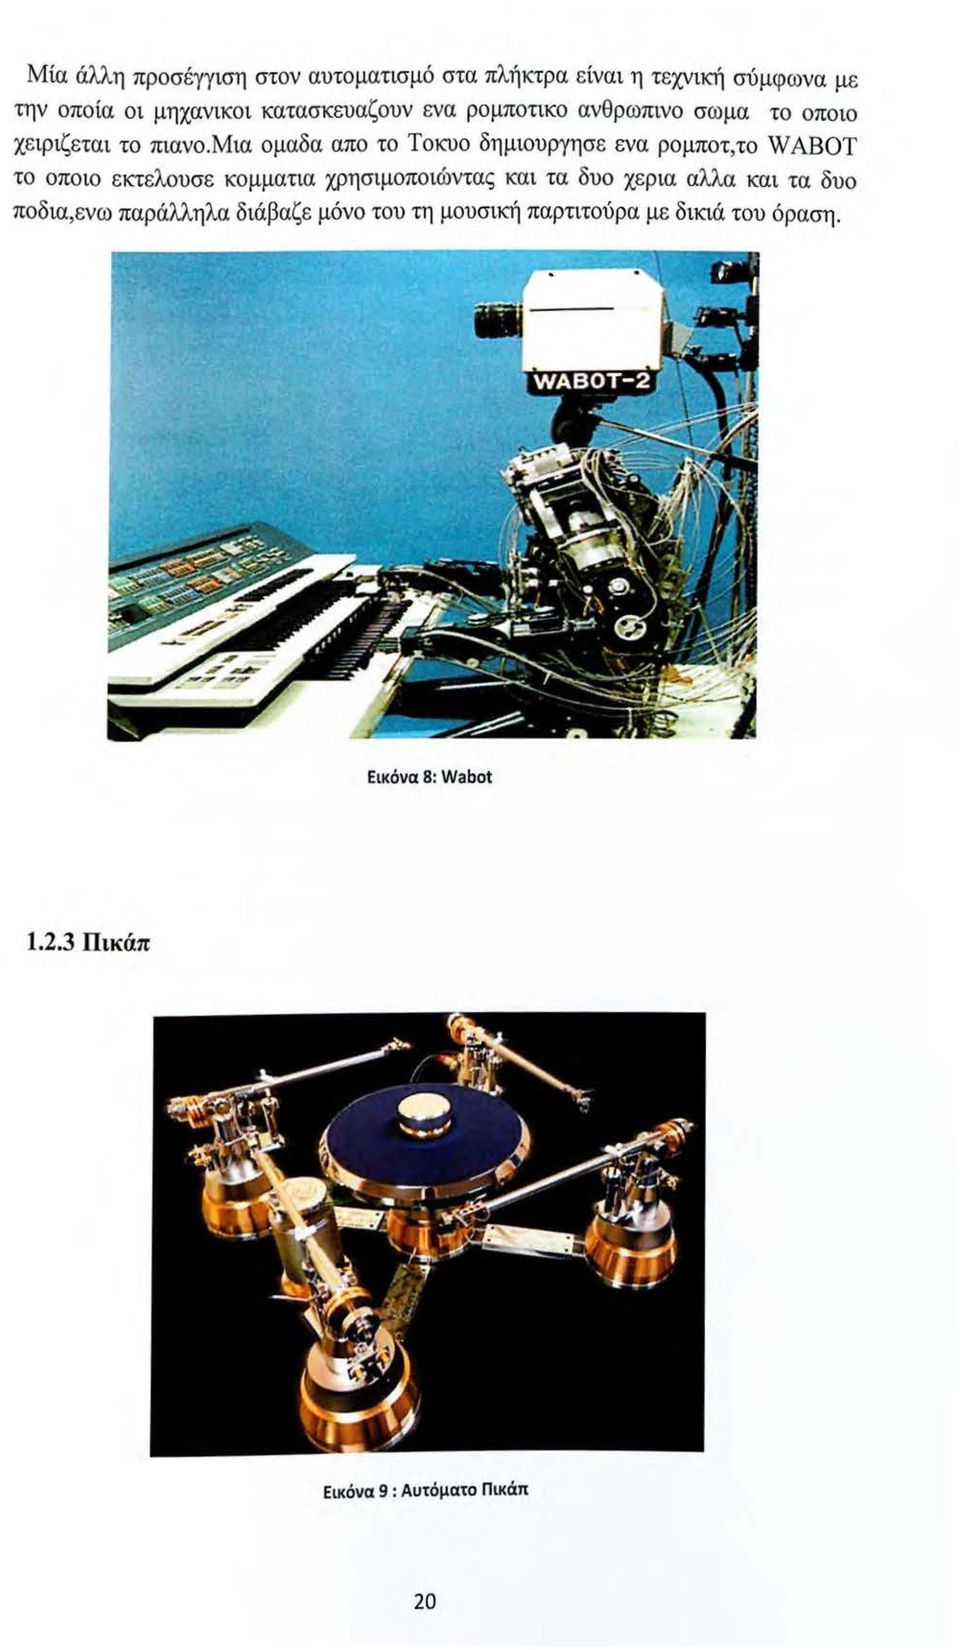 μια ομαδα απο το Τοκυο δημιουργησε ενα ρομποτ,το WABOT το οποιο εκτελουσε κομματια χρησιμοποιώντας και τα δυο